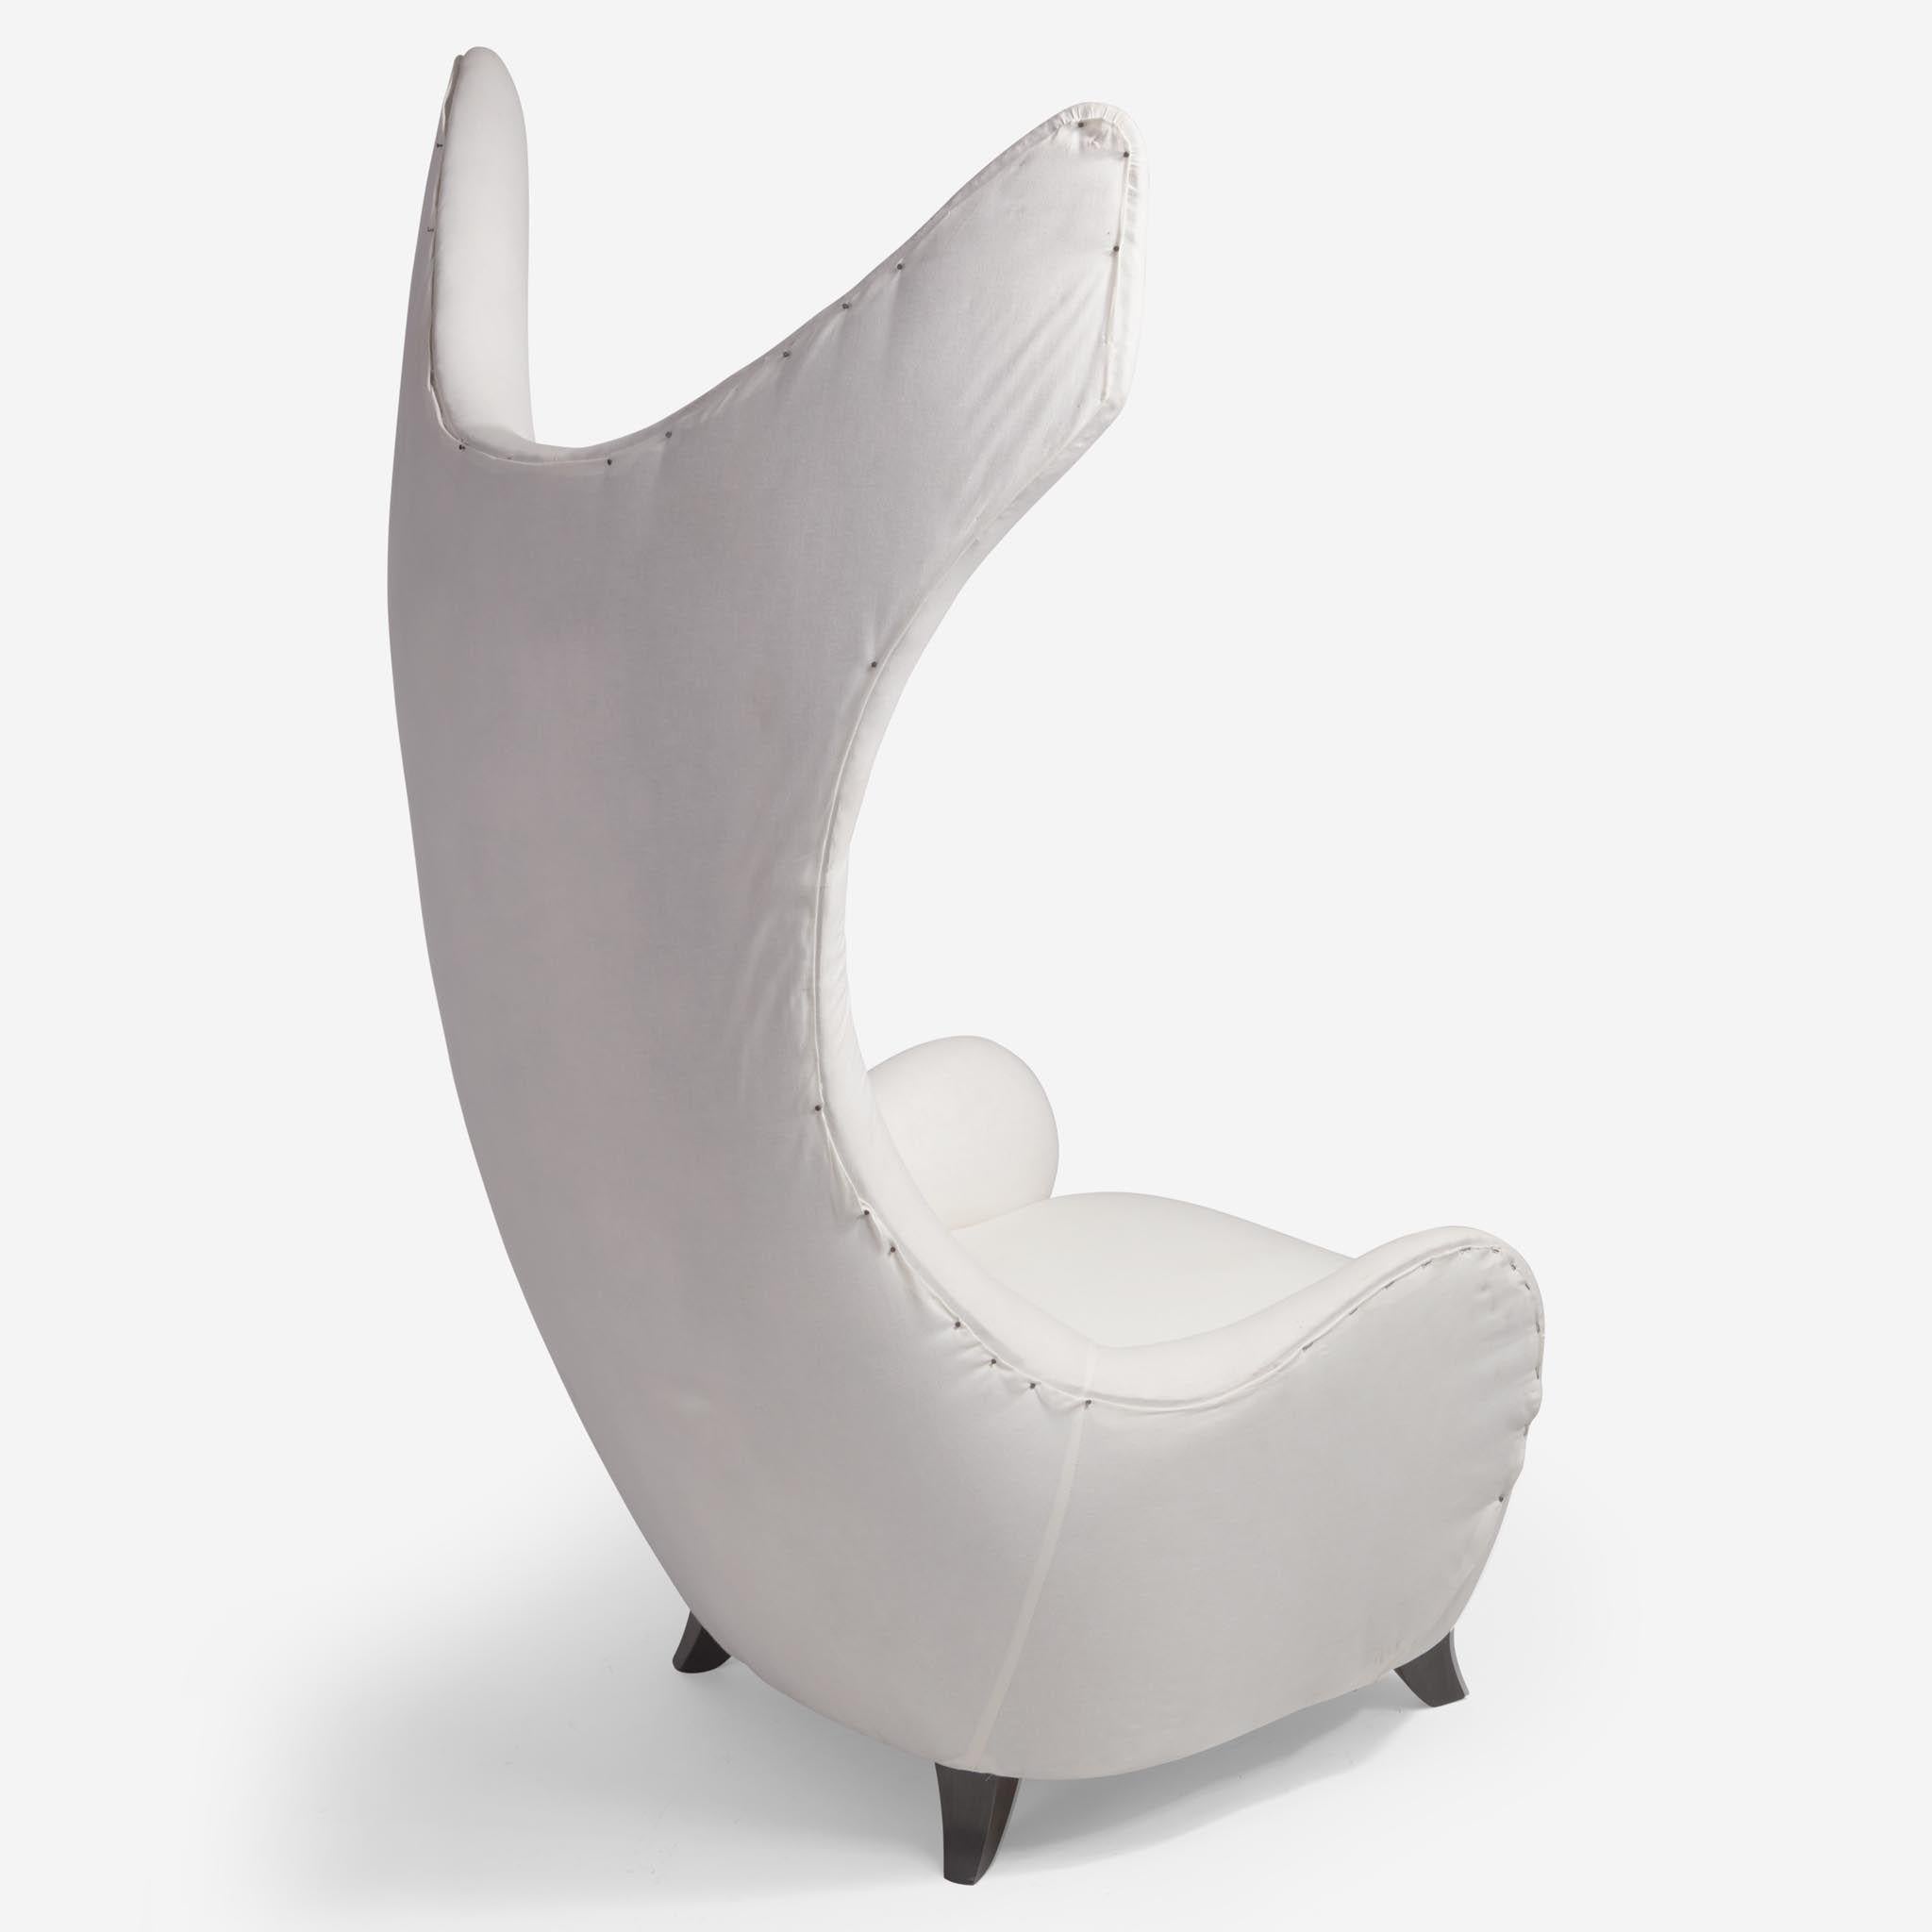 Außergewöhnlicher und einzigartiger Stuhl mit dramatischer Rückenlehne, entworfen von Vladimir Kagan für Baroness Lambert. Kurz vor Kagans Tod hatte die Baronin um die Fertigstellung der beiden Stühle gebeten. Die Stühle dienten als Vorbild für